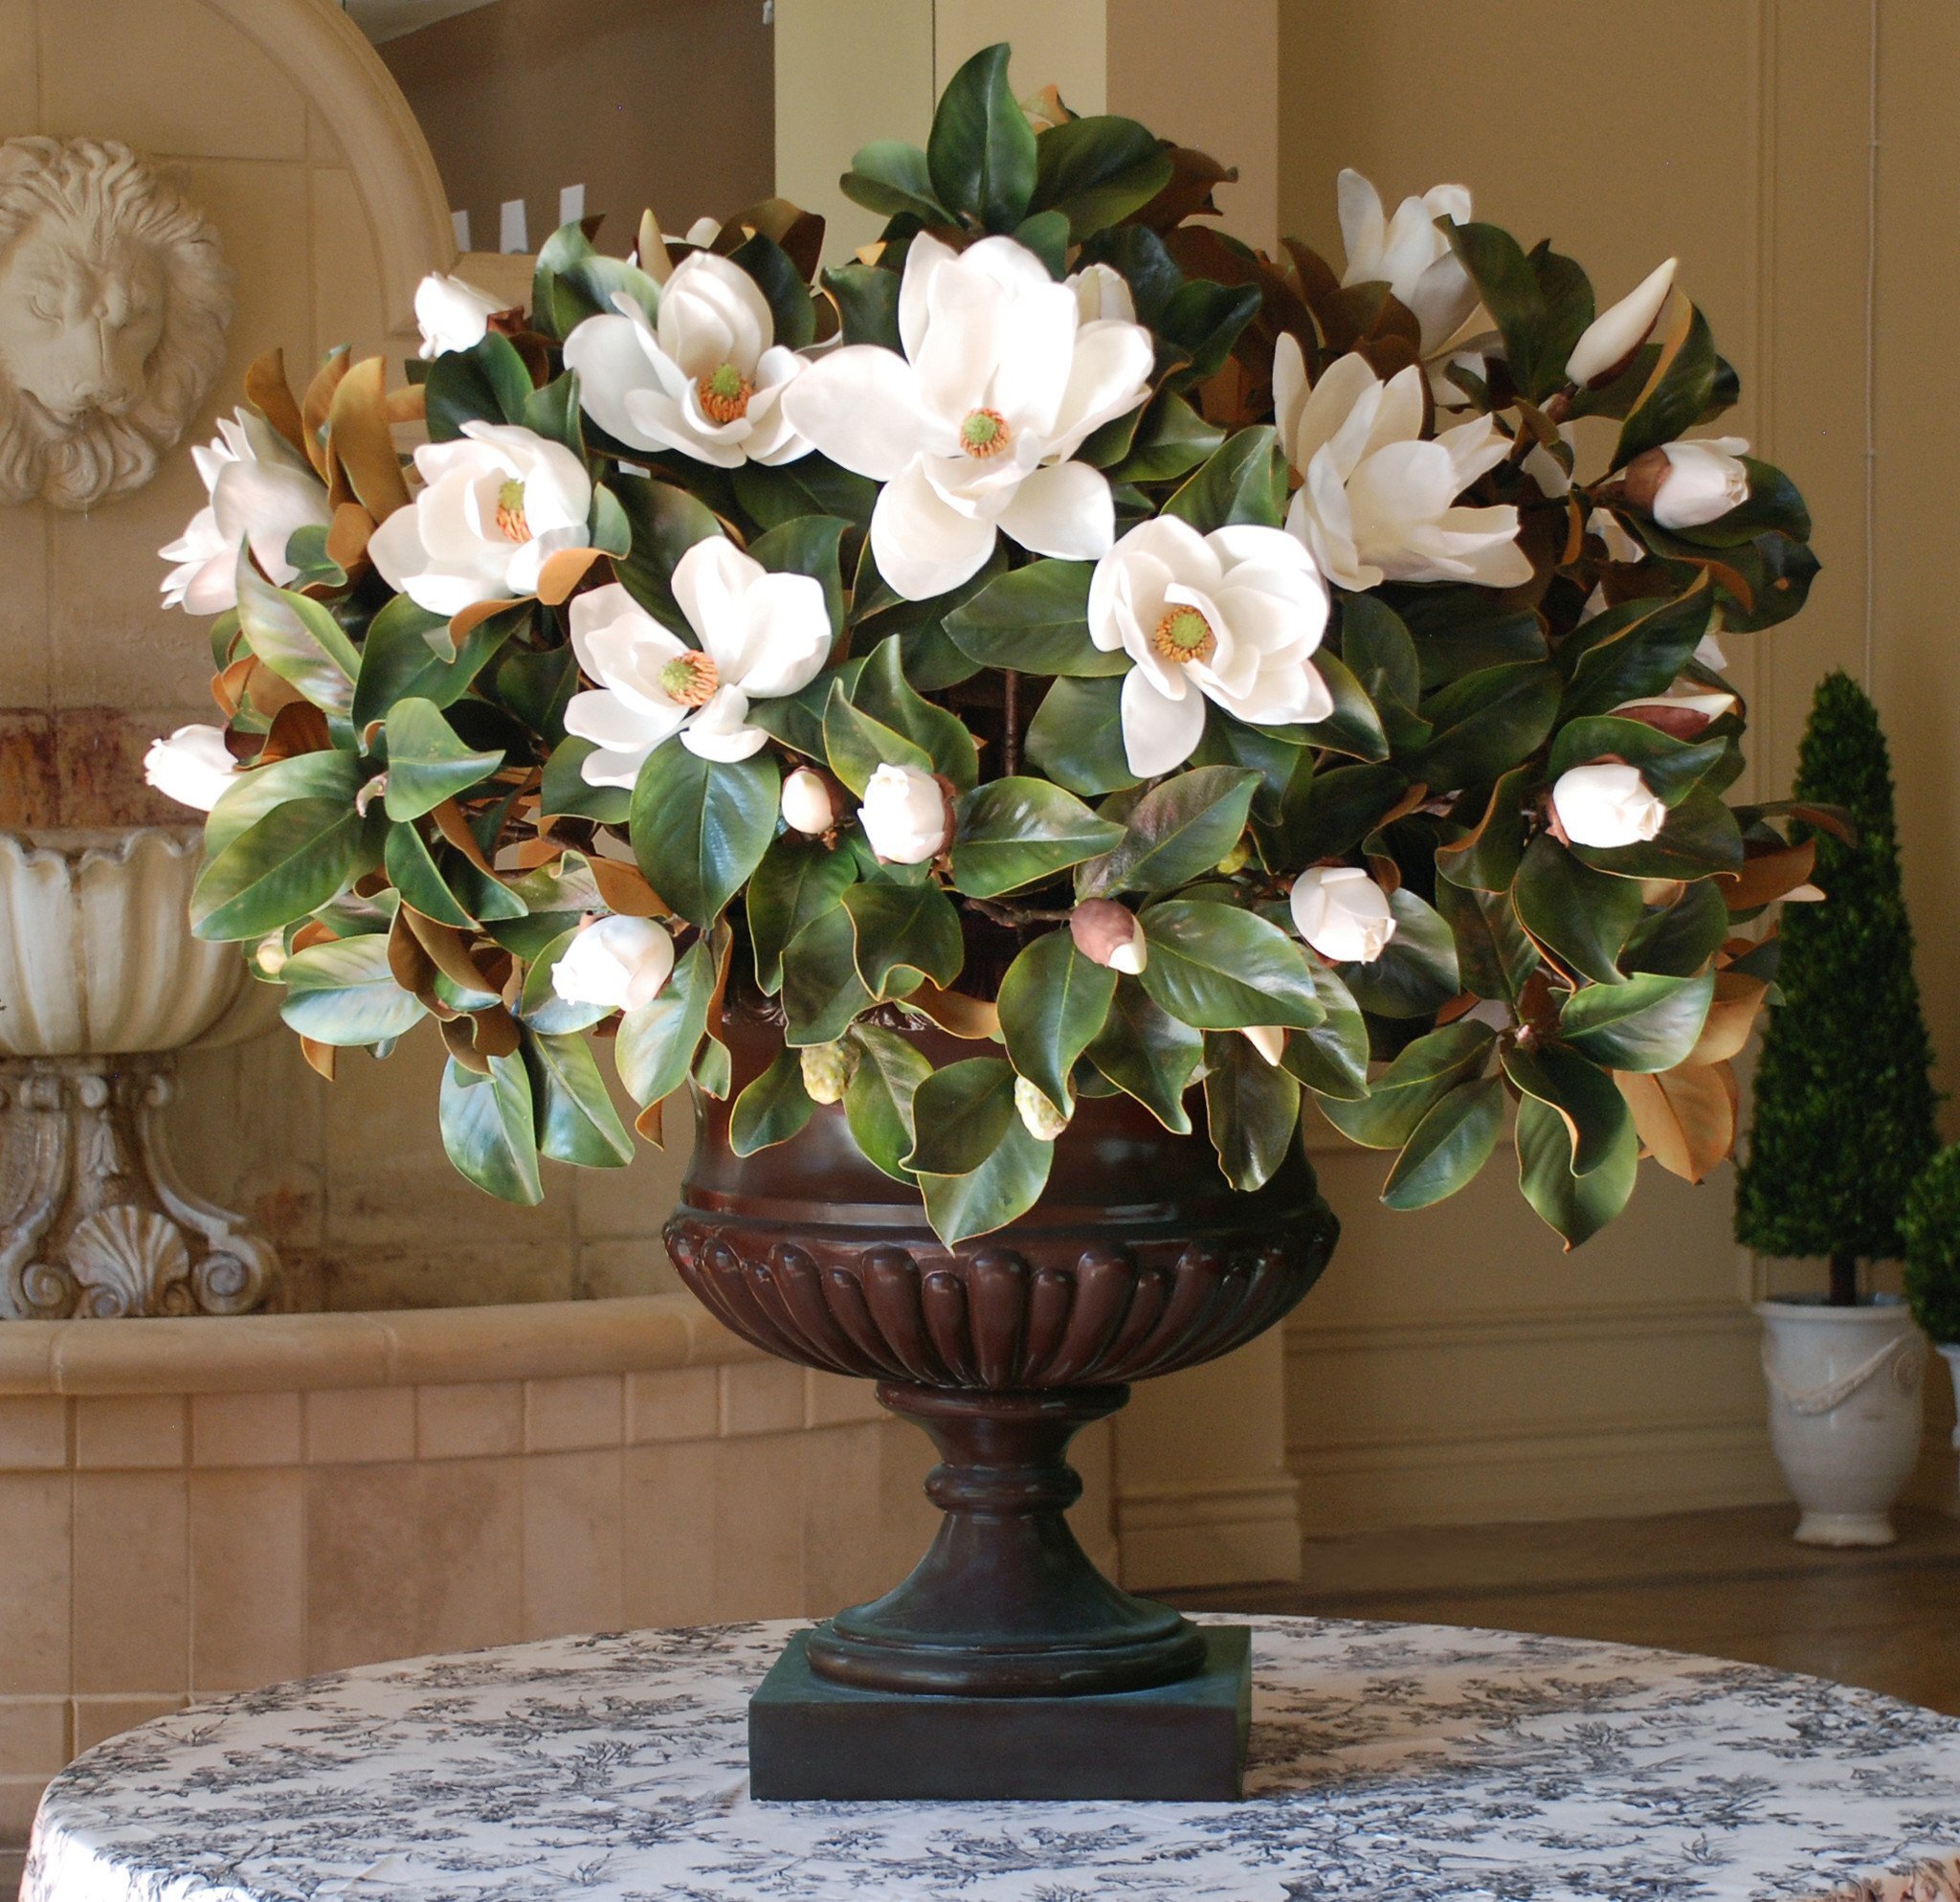 magnolia arrangements and bouquet ideas